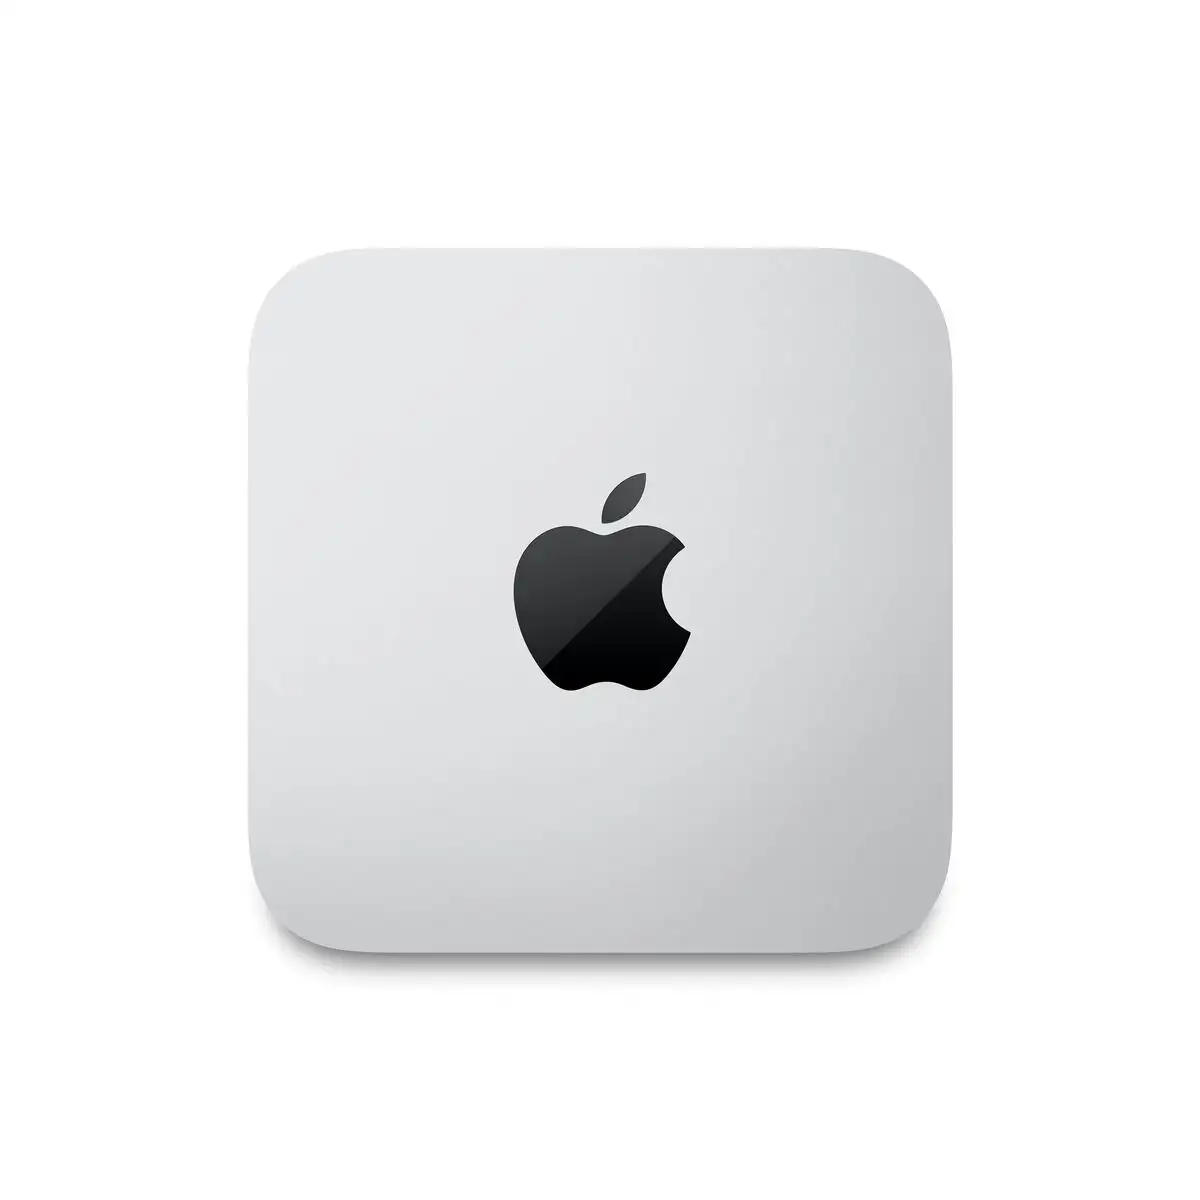 Mini pc apple mac studio m1 32 gb ram_5561. DIAYTAR SENEGAL - Là où le Shopping Devient une Expérience. Naviguez à travers notre catalogue diversifié et découvrez des produits qui ajoutent de la couleur et de la passion à votre vie.